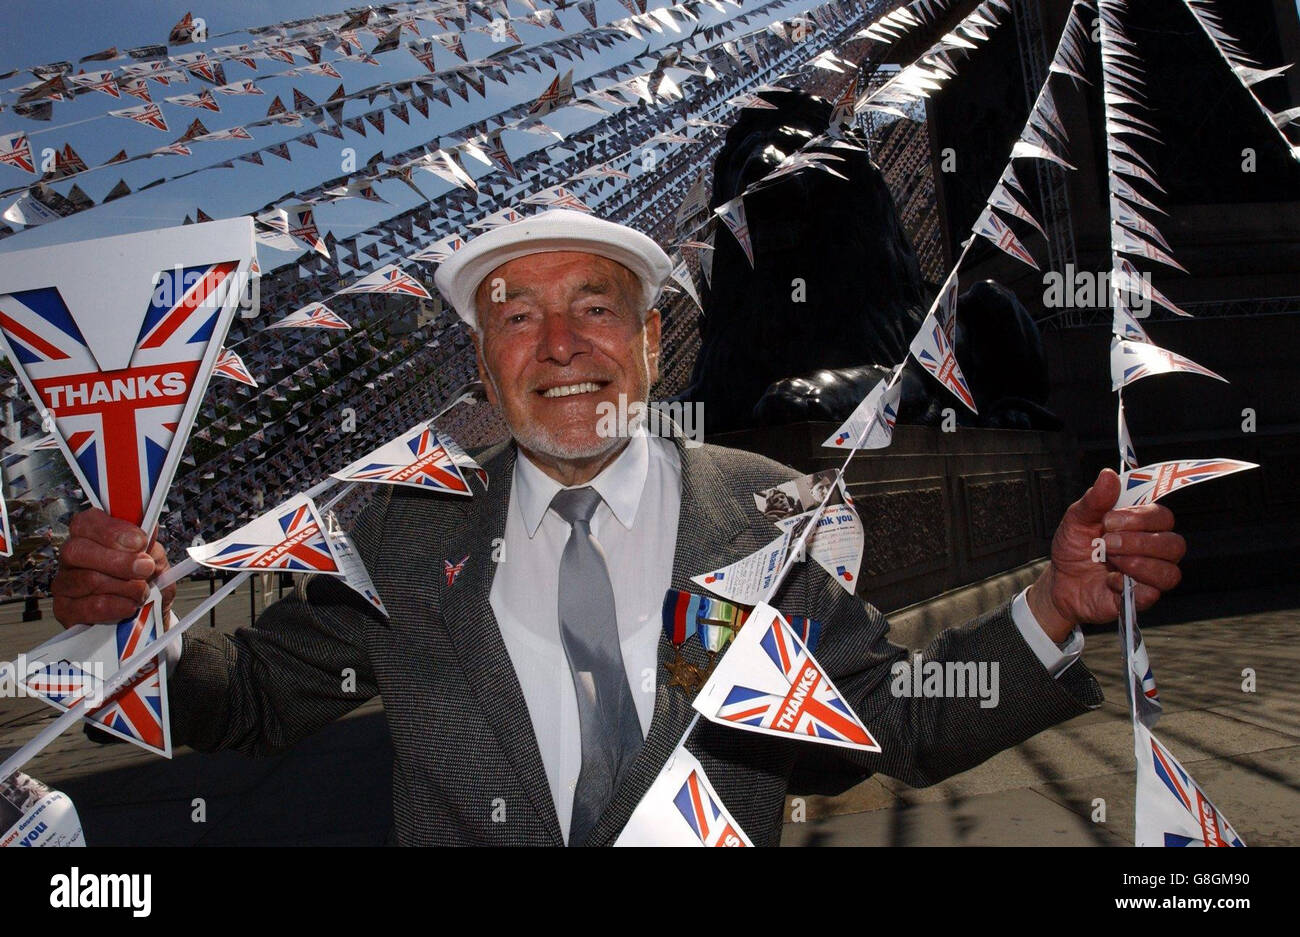 George Broomhead, 82, aus Liverpool, der während der Landungen des D-Day auf einem Schiffszerstörer war, kehrt zum Trafalgar Square zurück, wo er 1945 das Ende des Krieges feiern konnte. Trafalgar Square ist in mehreren Kilometern von Verpfällungen drapiert, erstellt aus mehr als 115,000 Nachrichten des Dankes an Kriegsveteranen des Zweiten Weltkriegs, die es von der britischen Öffentlichkeit erhalten hat. Jede Flagge trägt eine Dankesbotschaft von Einzelpersonen, die all jenen Männern und Frauen, die vor 60 Jahren für unsere Freiheit gekämpft haben, ihre Dankbarkeit und ihren Respekt übermitteln wollen. Stockfoto